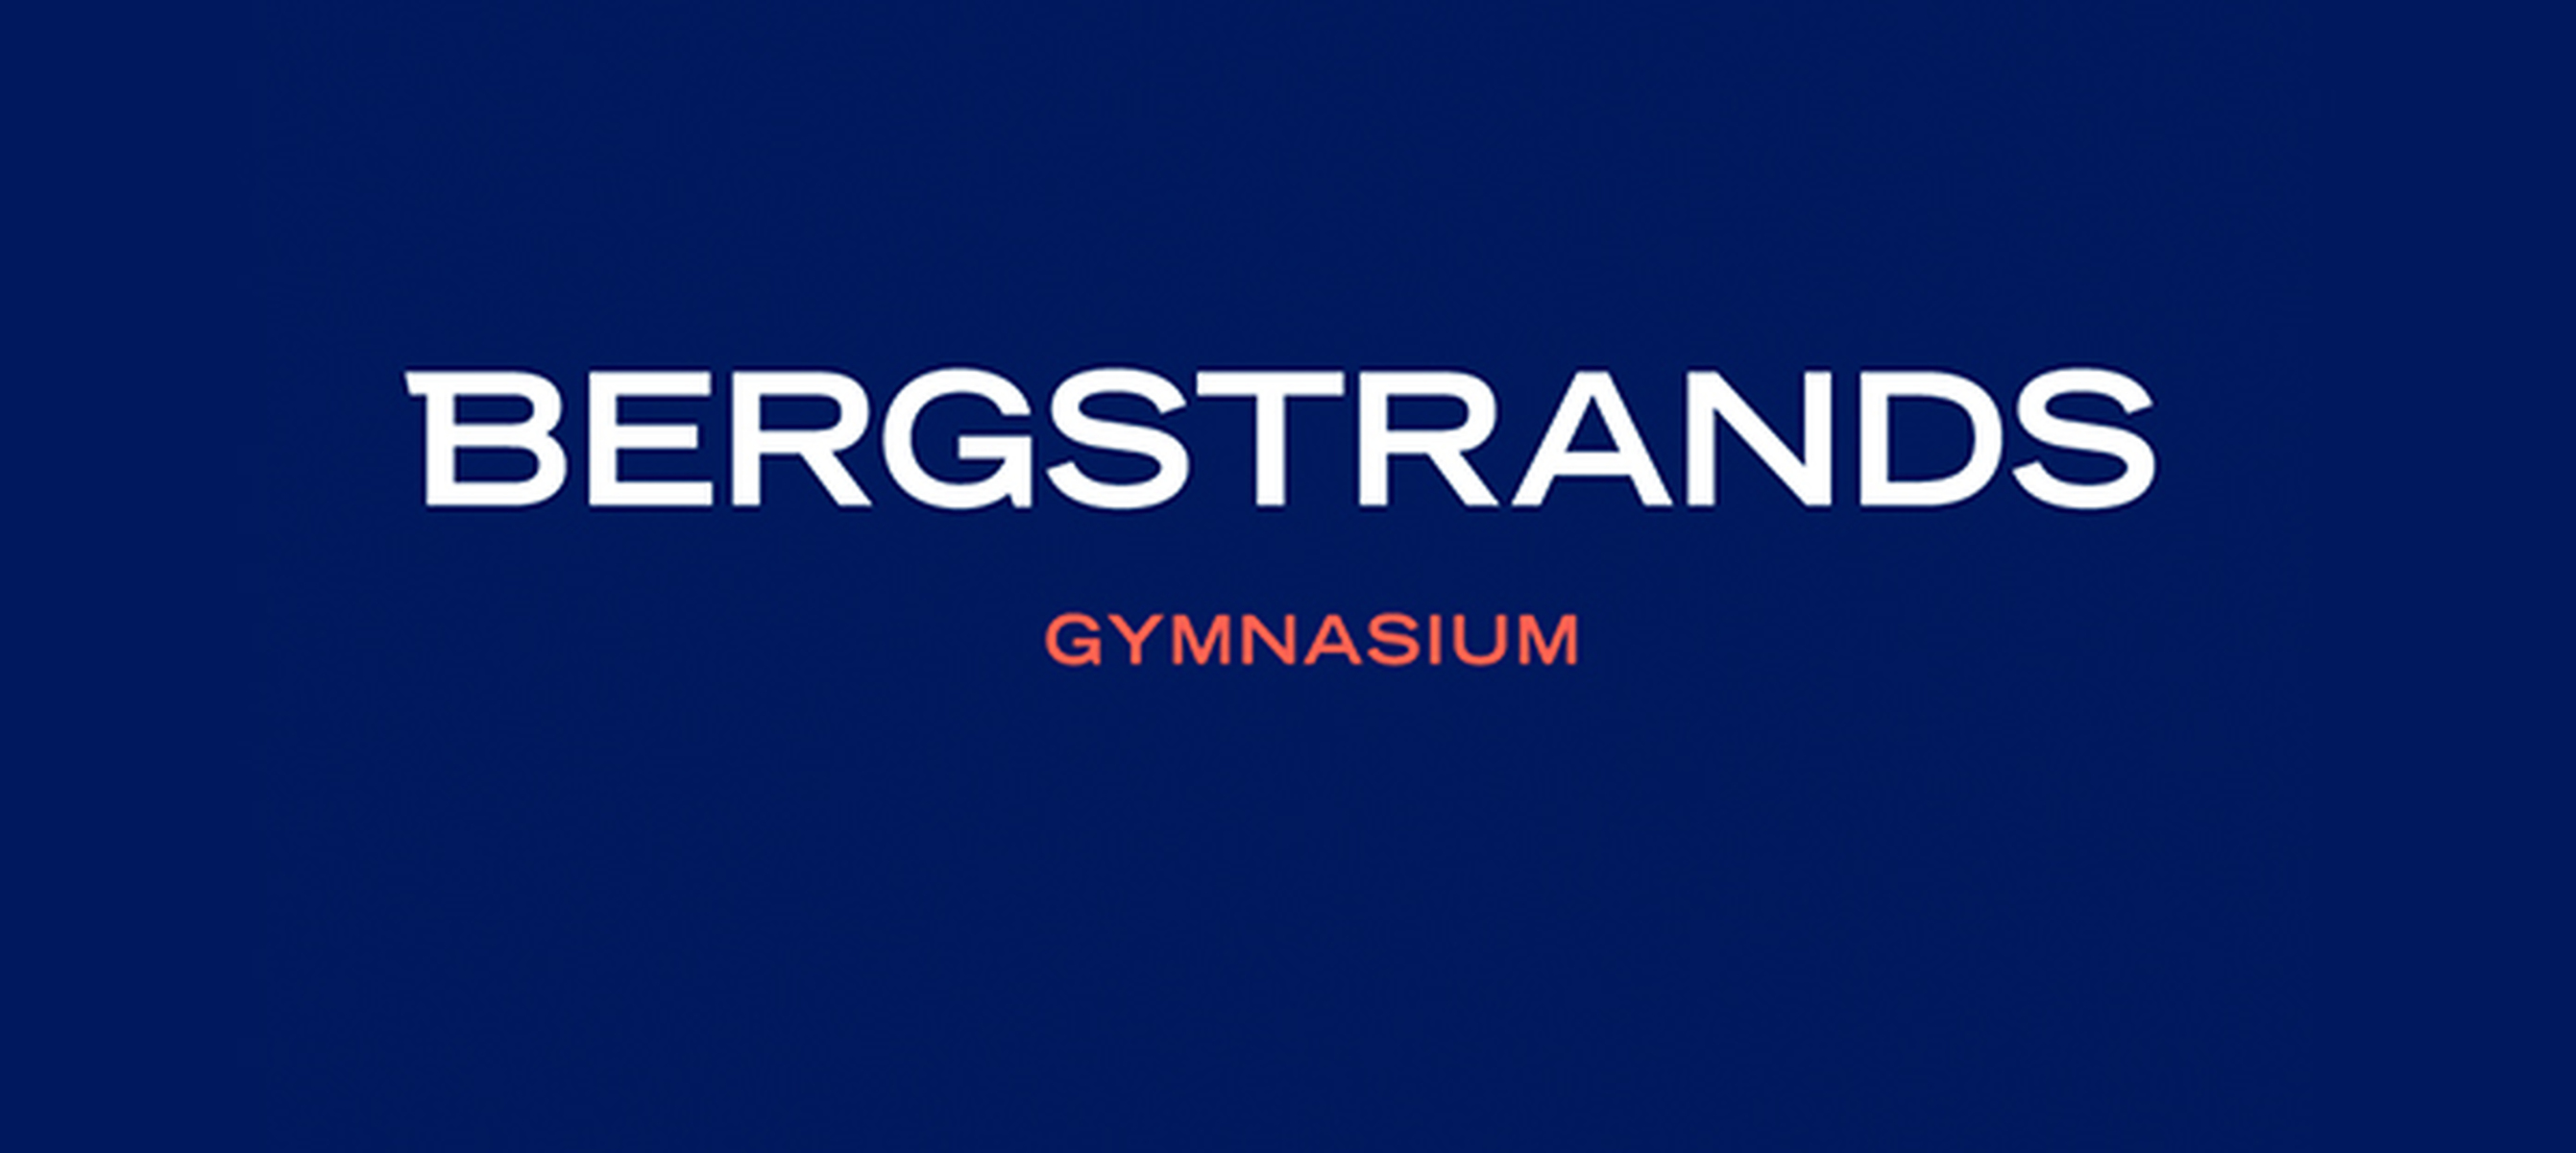 Bergstrands Gymnasium i Stockholm